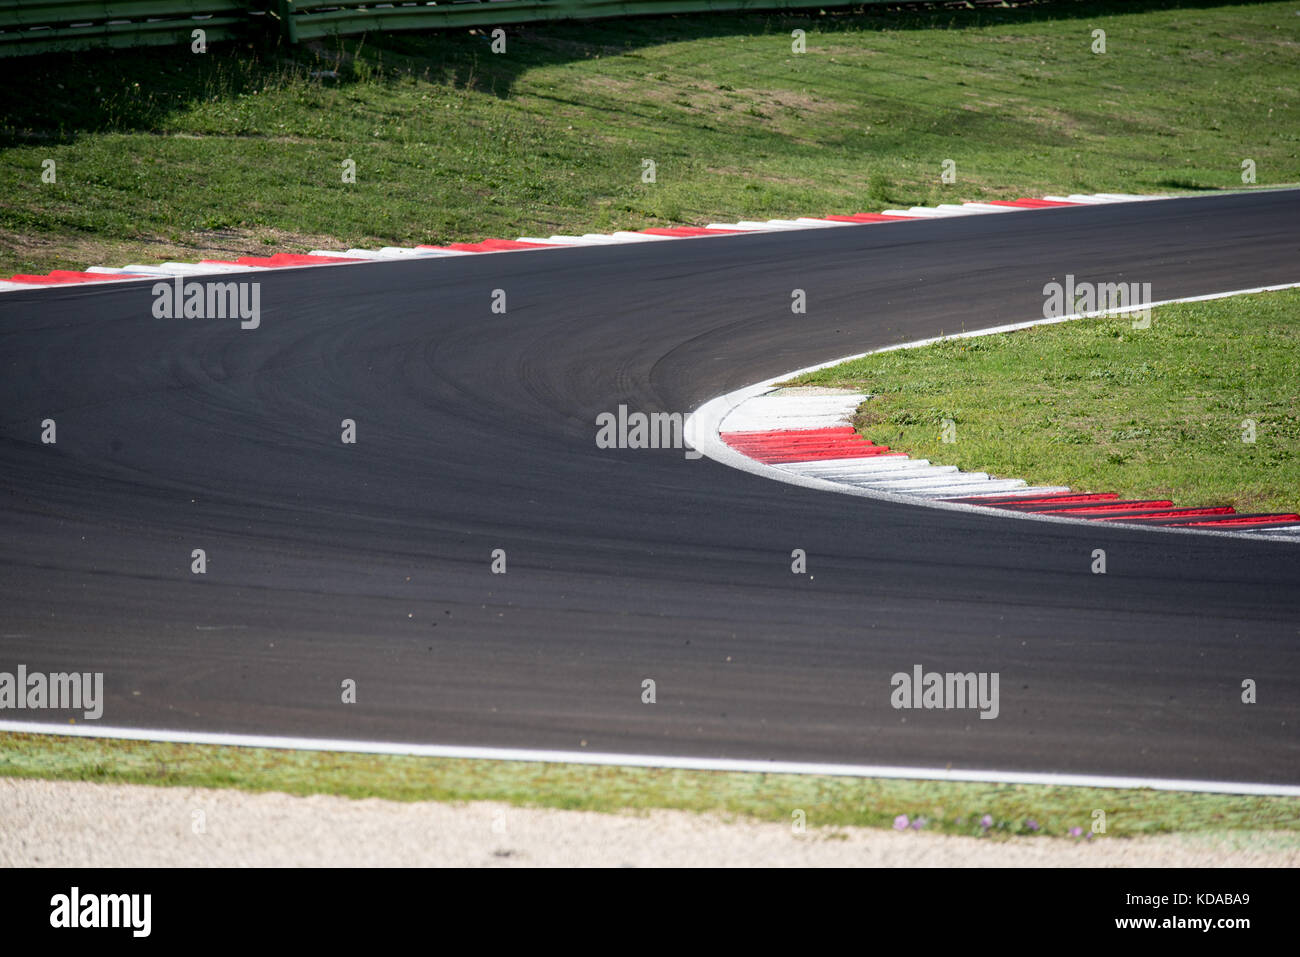 L'asphalte du circuit de vide motorsport track, rond et freiner l'herbe verte, à l'extérieur, notion de concurrence et de course Banque D'Images